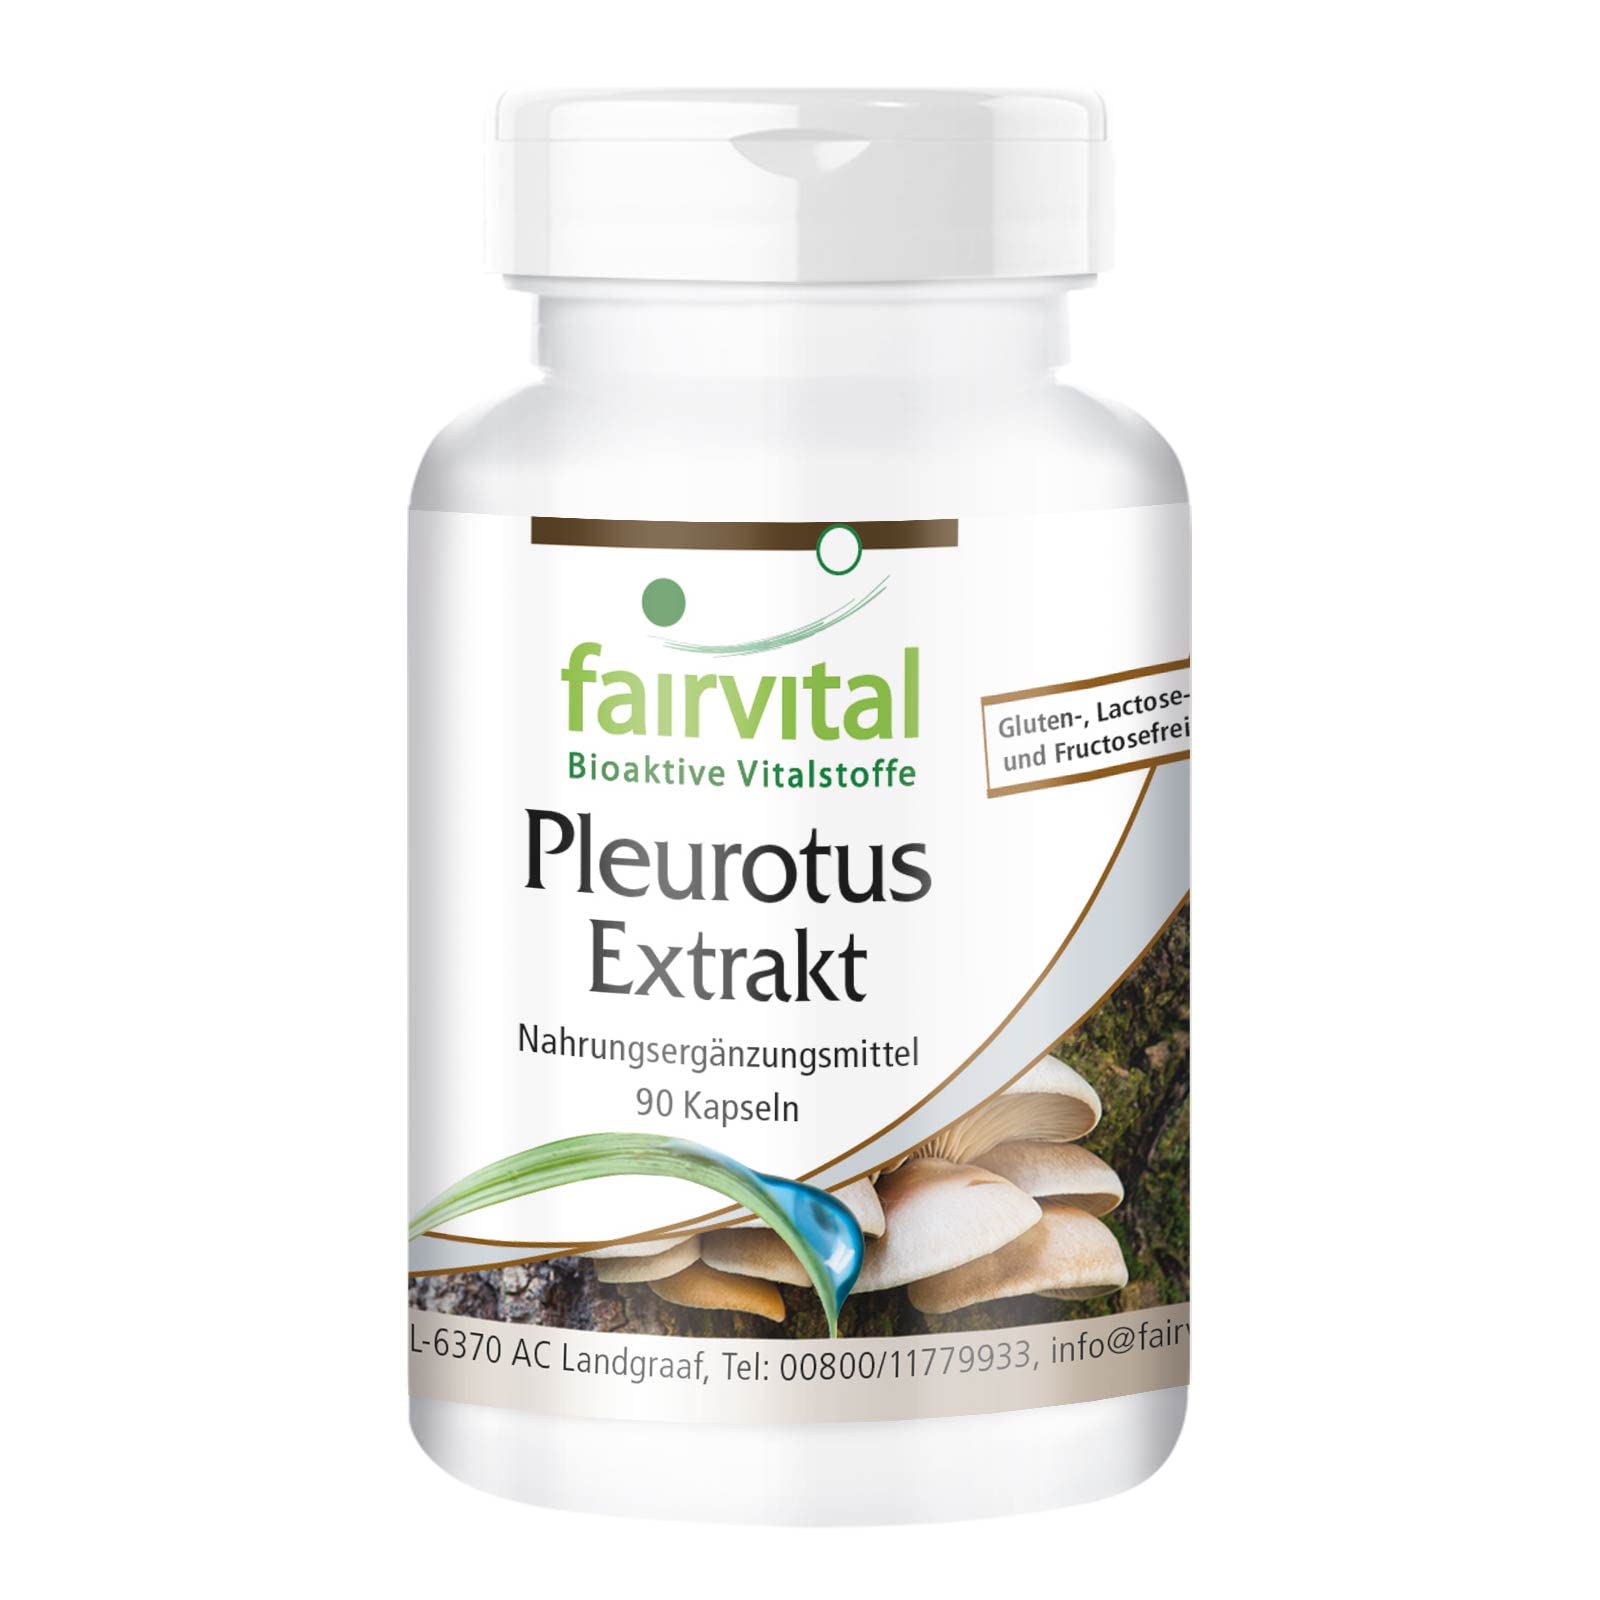 Fairvital | Pleurotus Extrakt 500mg - HOCHDOSIERT - Pleurotus ostreatus (Austernseitling) - 30% Polysaccharide - VEGAN - 90 Kapseln